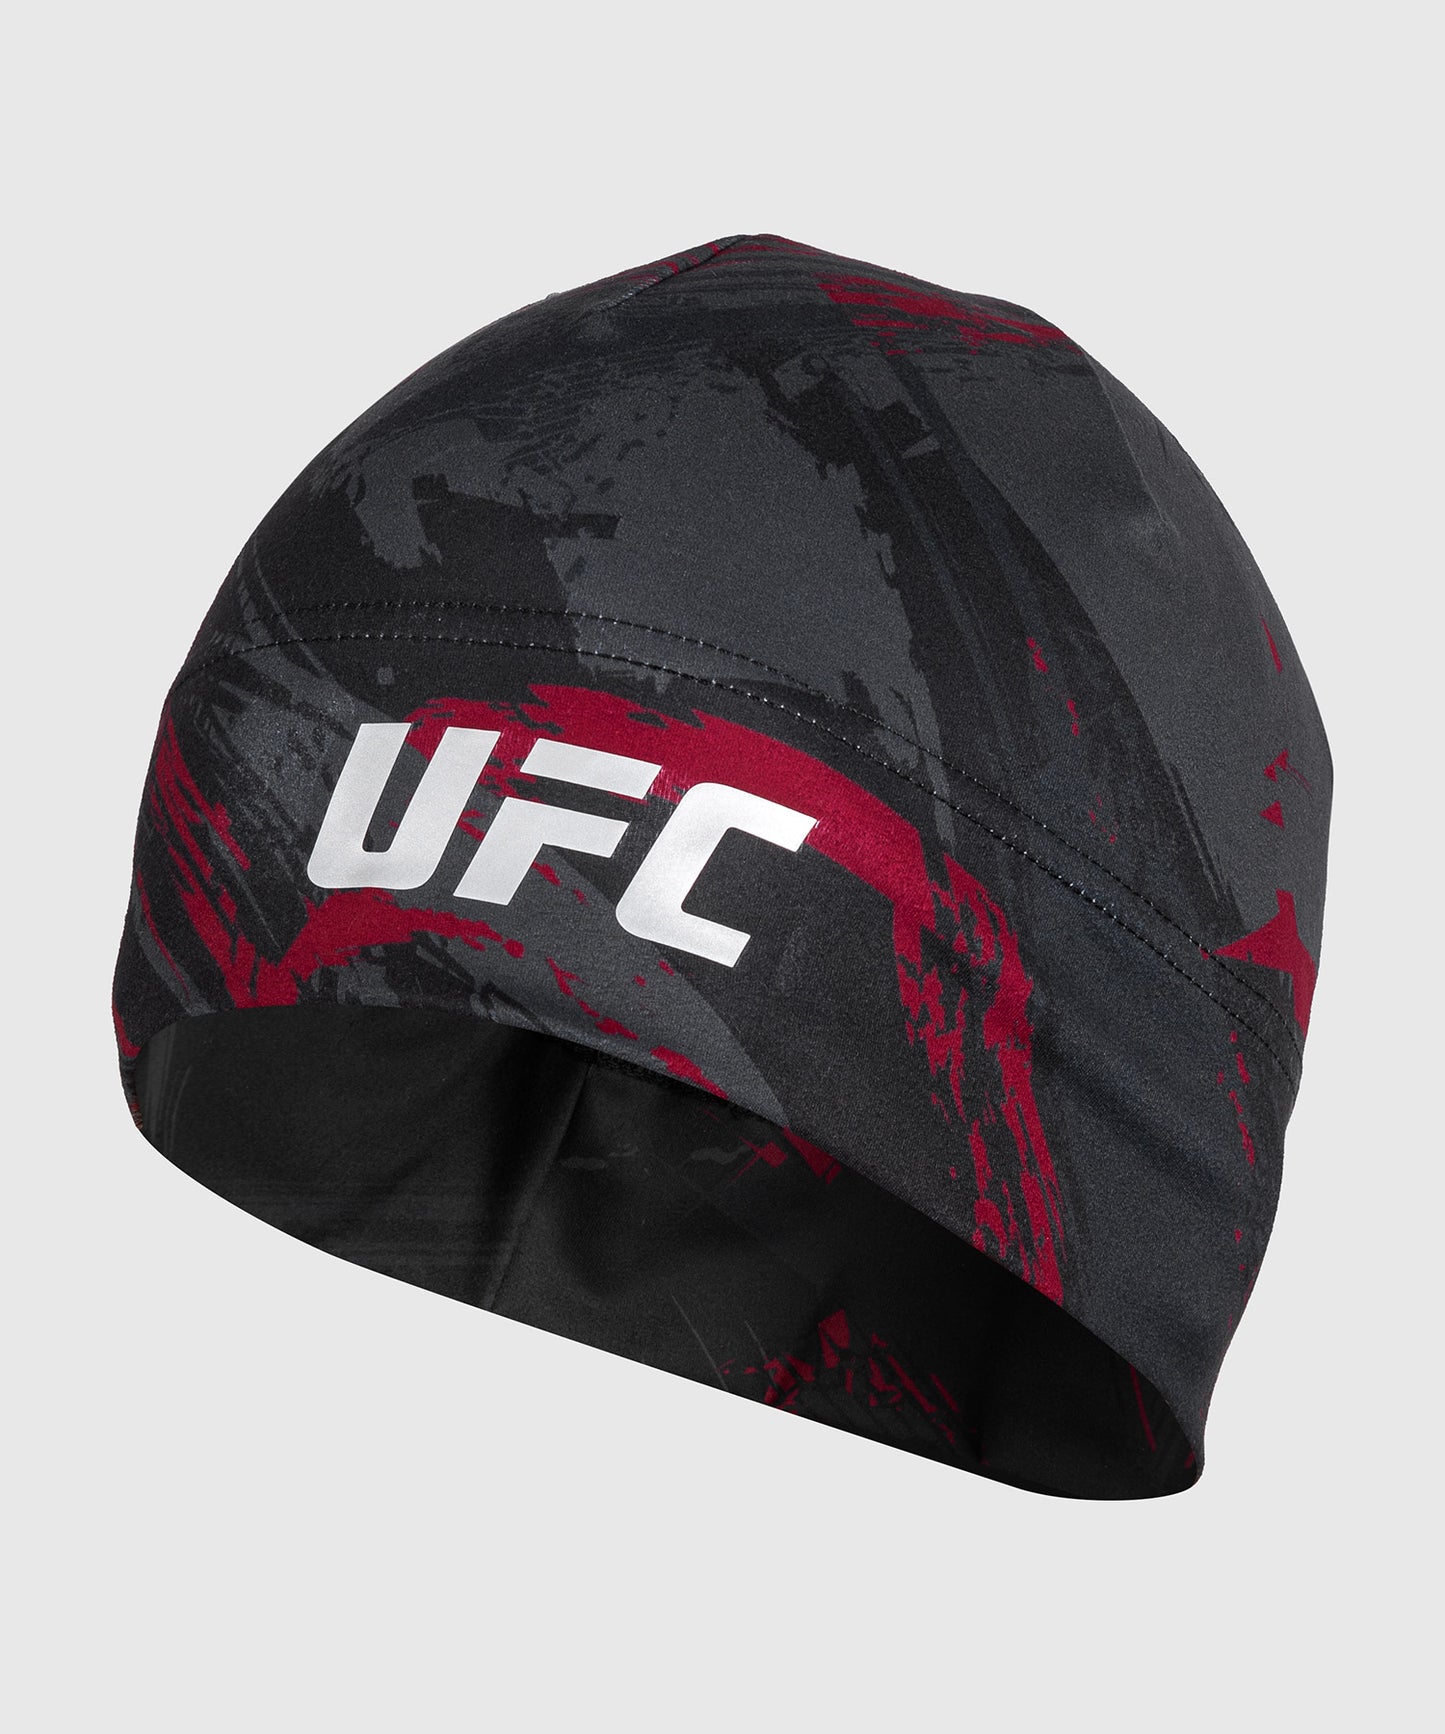 Venum Authentic Fight Week 2.0 UFC Kopfbedeckung - Schwarz